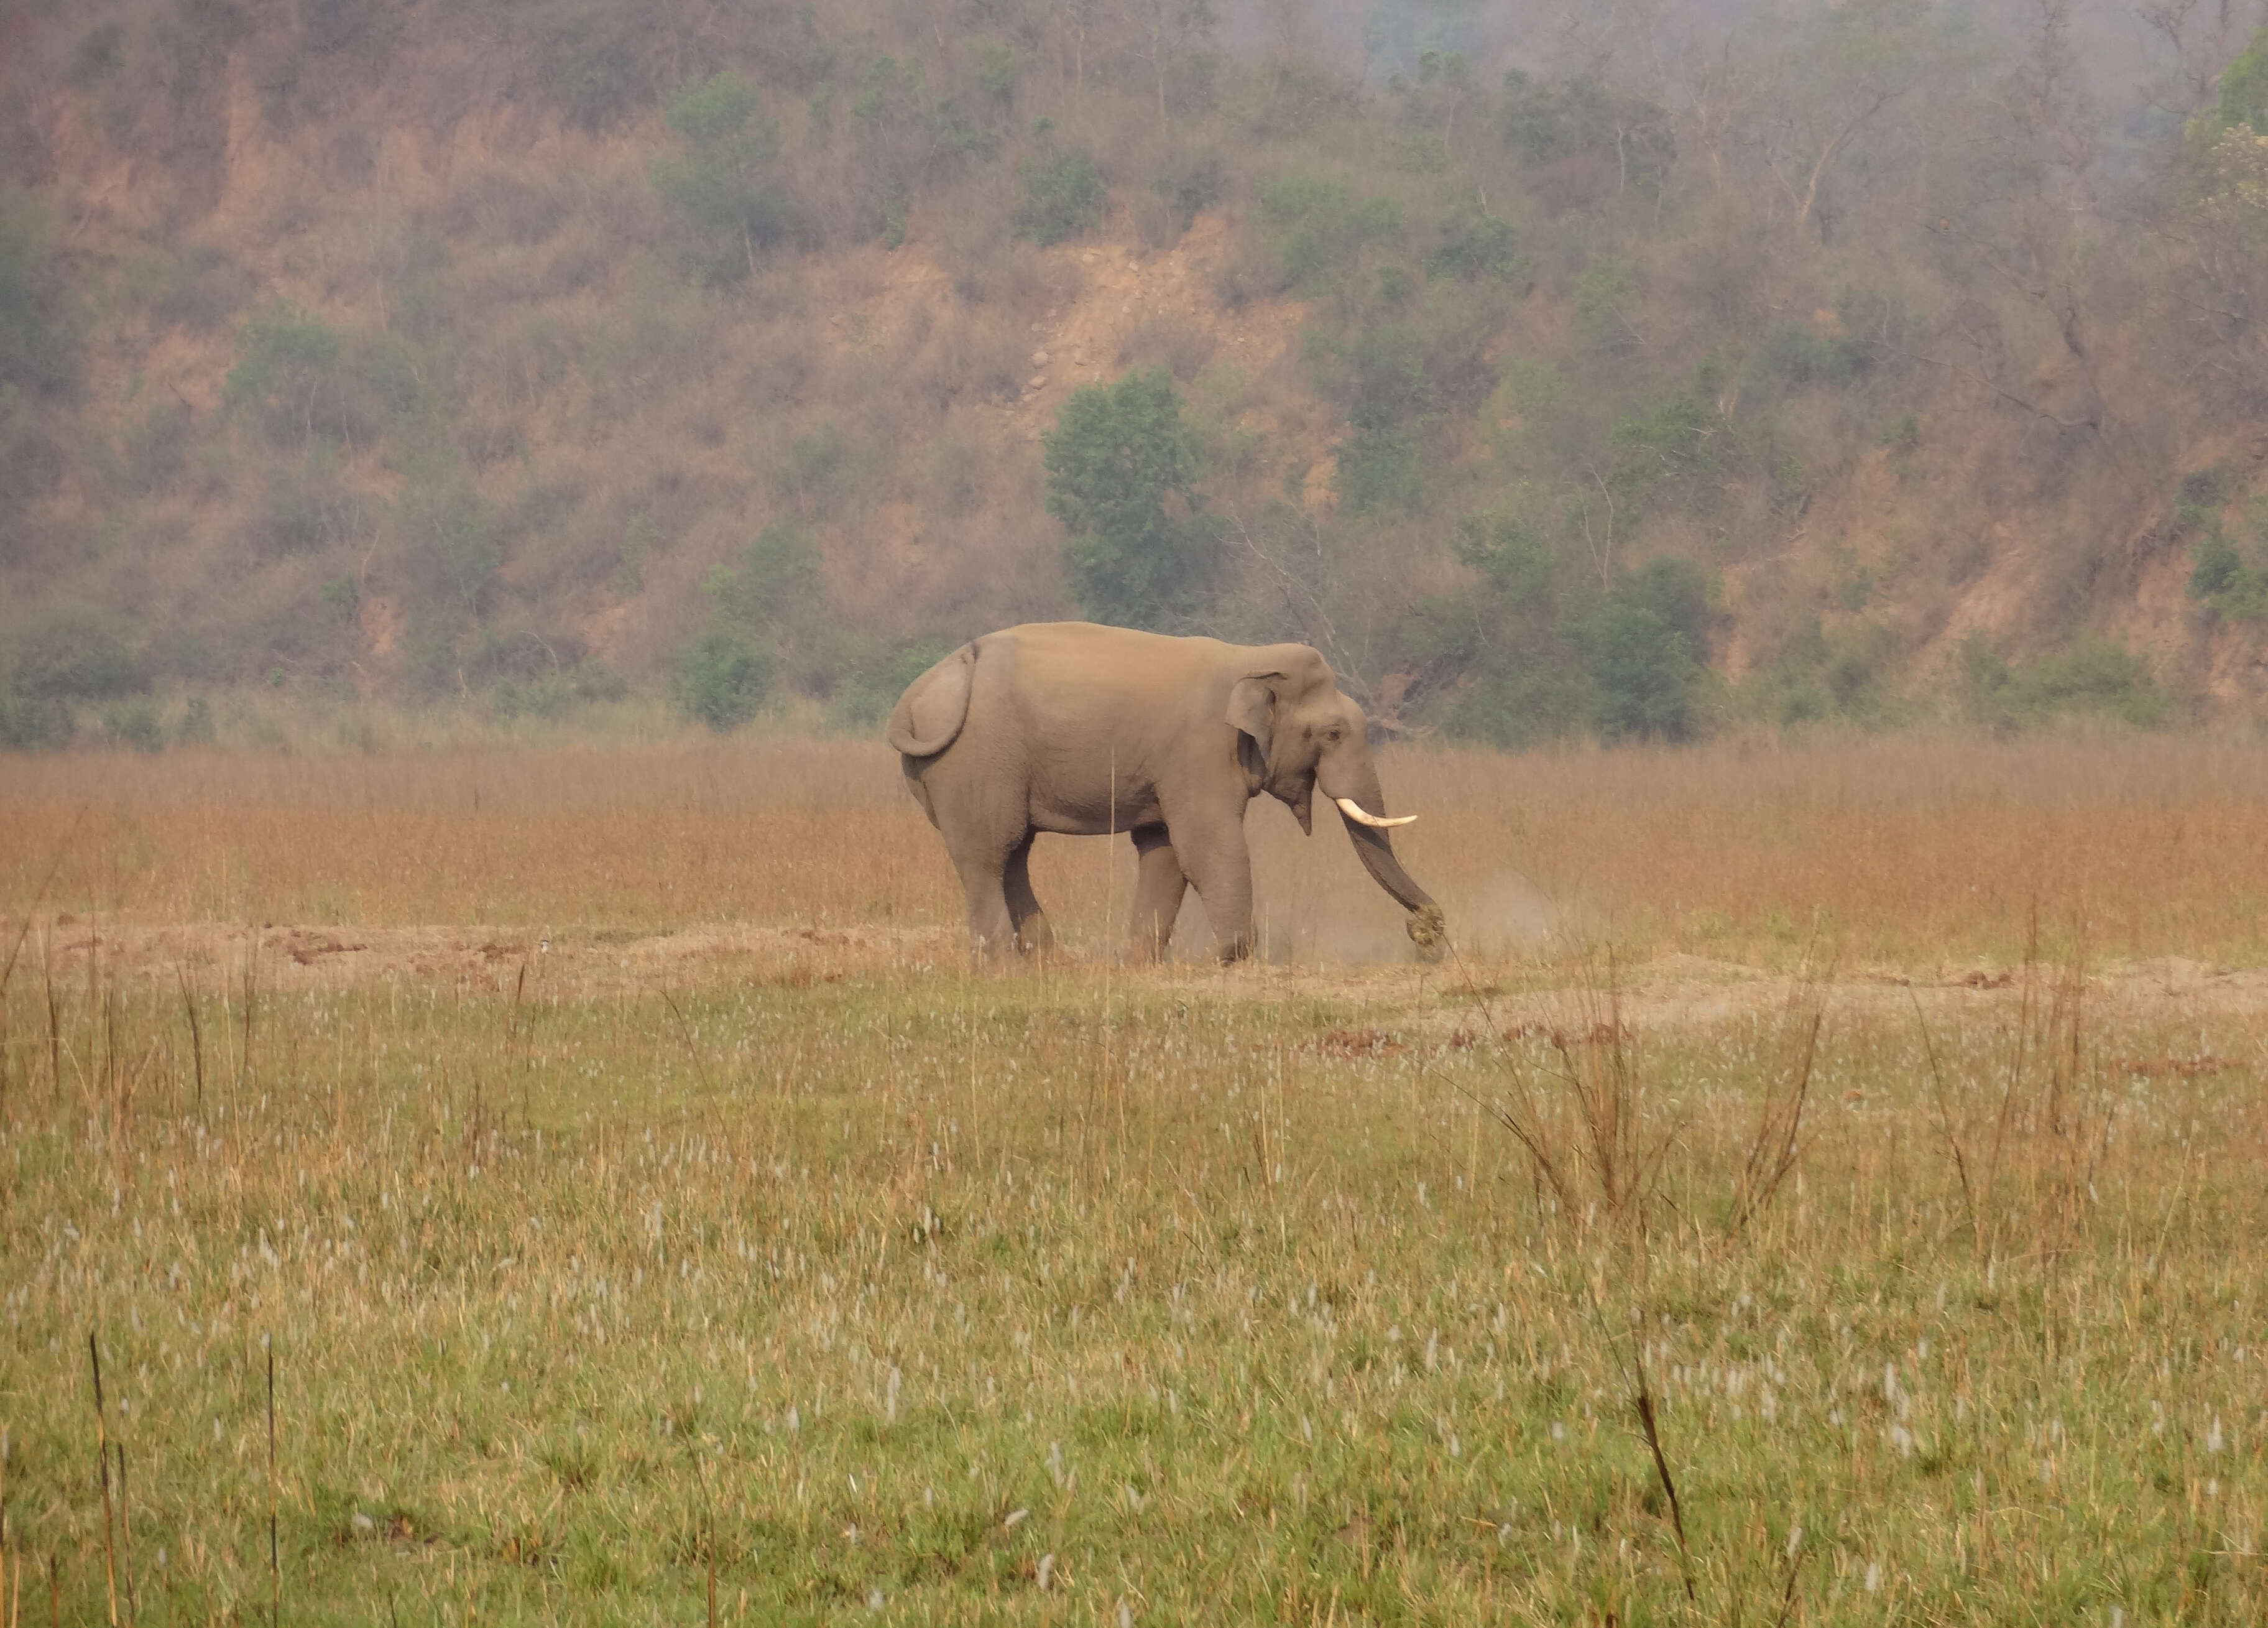 Image of Indian elephant